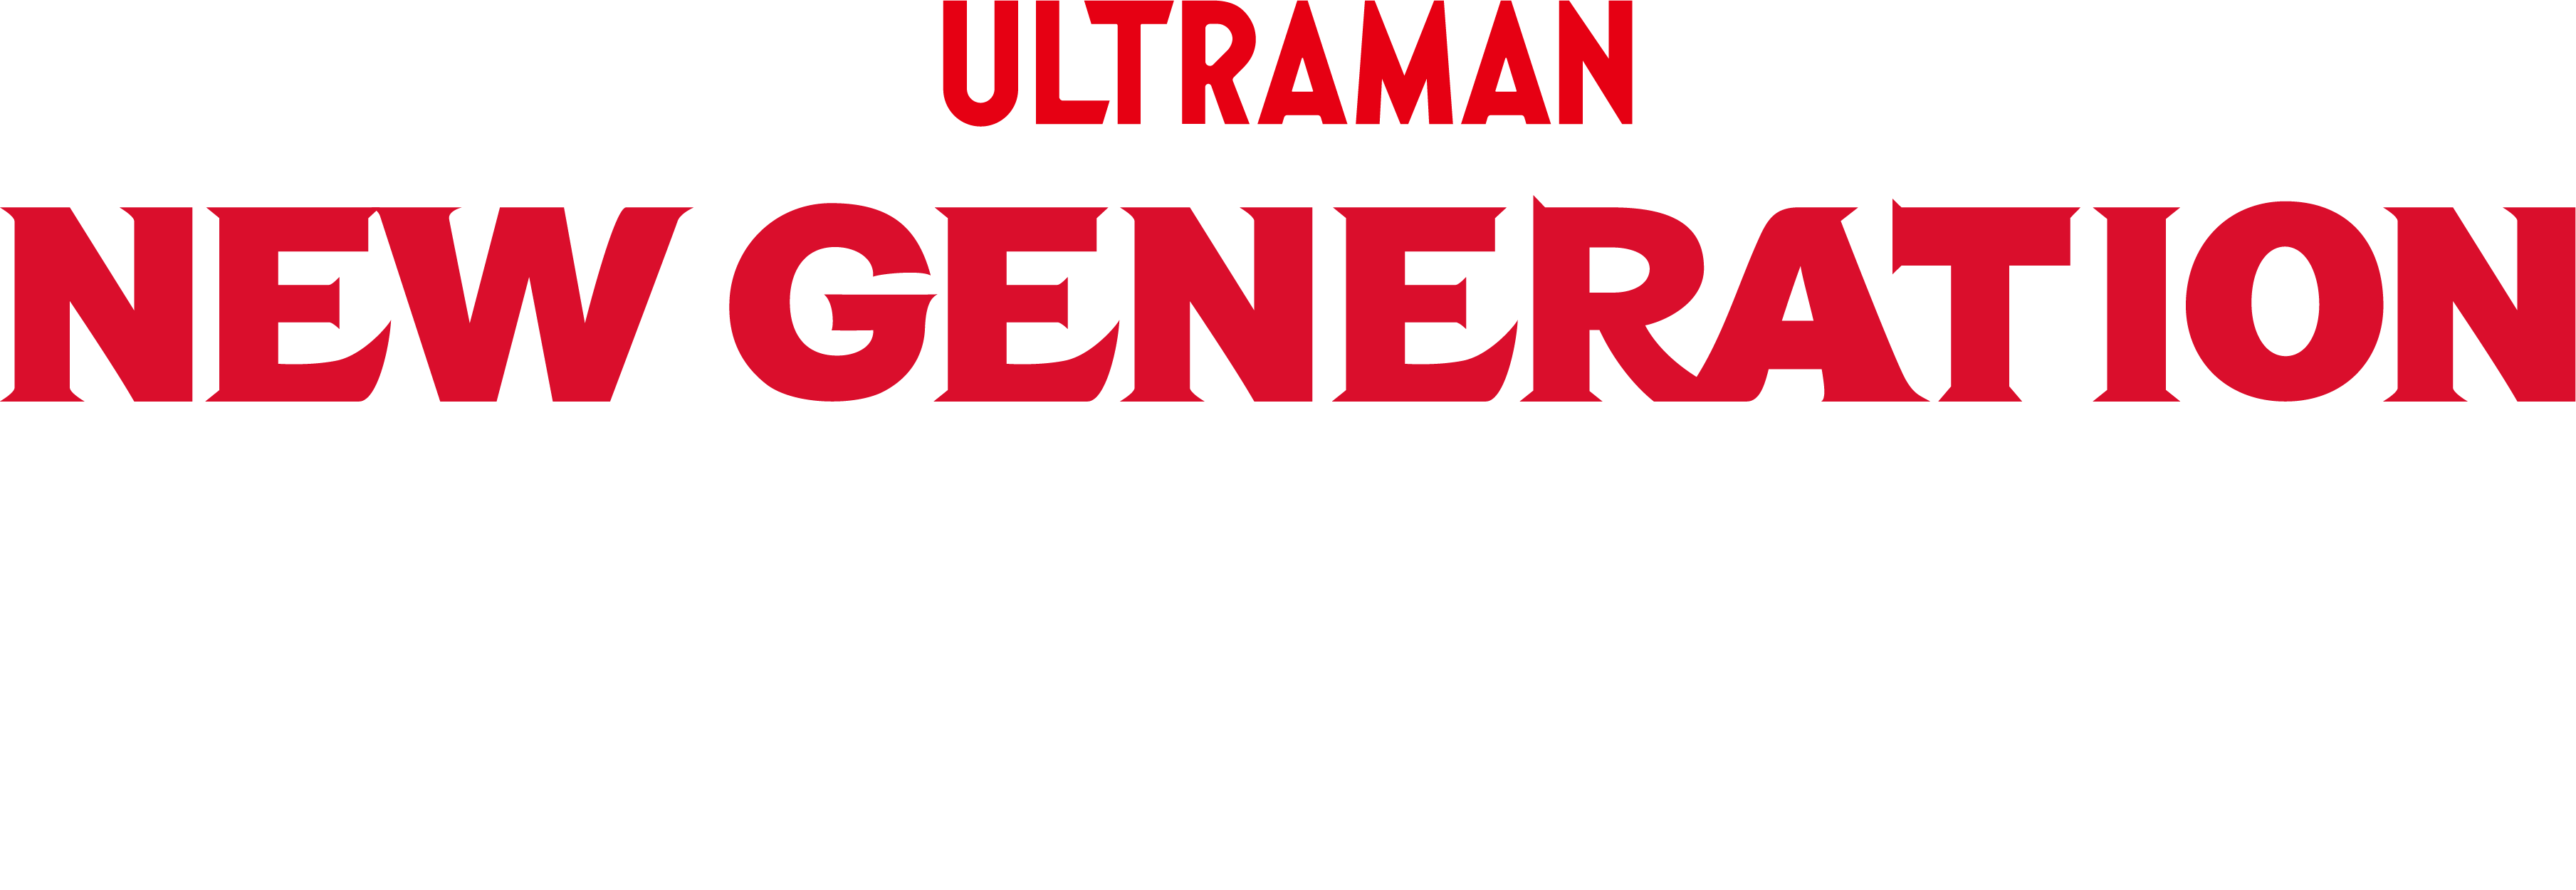 NEW GENERATION THE LIVE ウルトラマンデッカー編